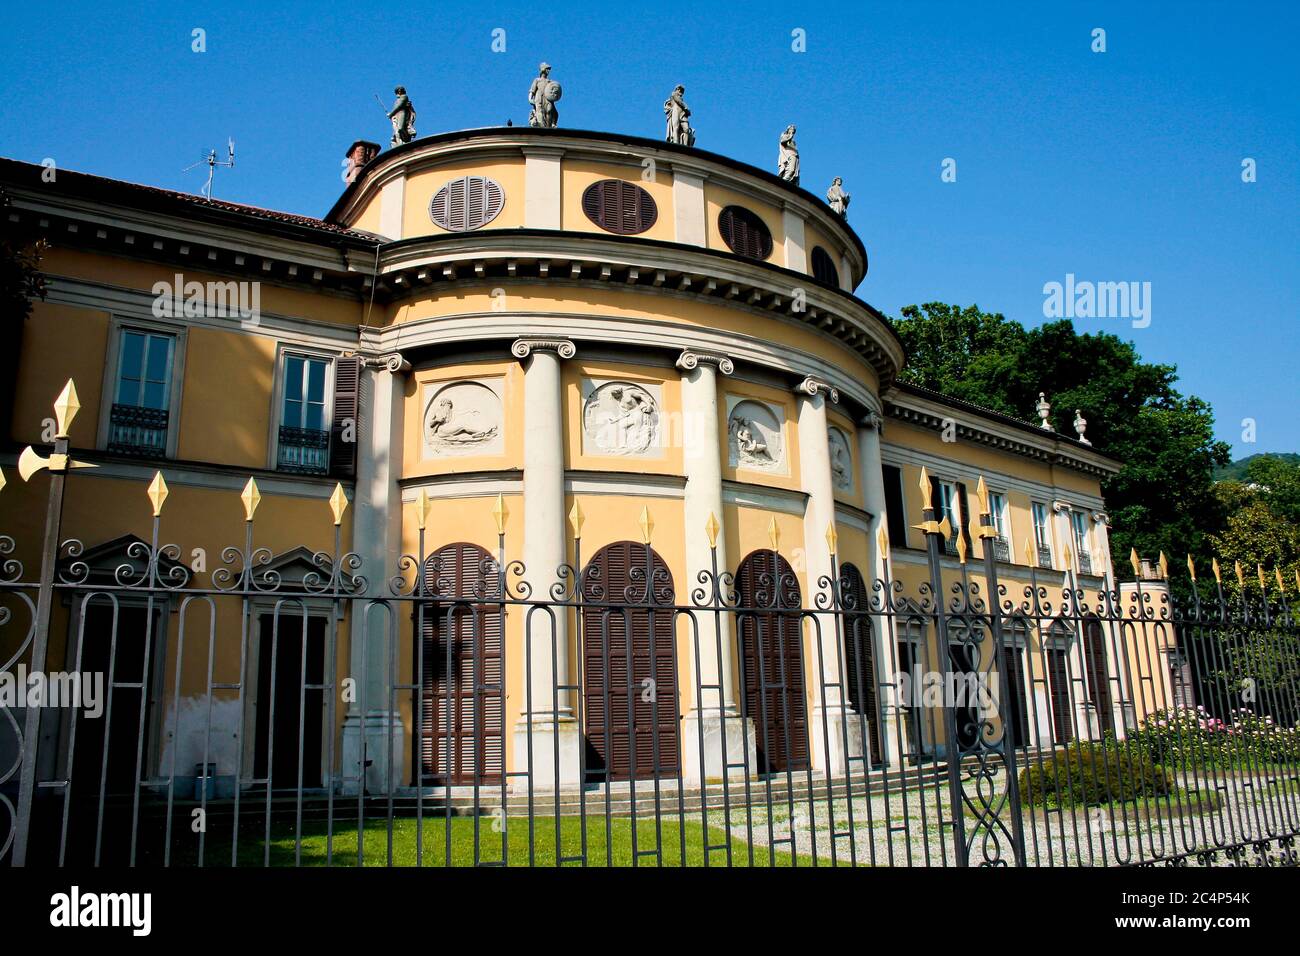 Como, Lombardy, Italy. The neoclassical Villa Saporiti (also known as Villa La Rotonda or Villa Resta Pallavicini), was built by the Austrian architect Leopold Pollack between 1791 and 1793. Stock Photo